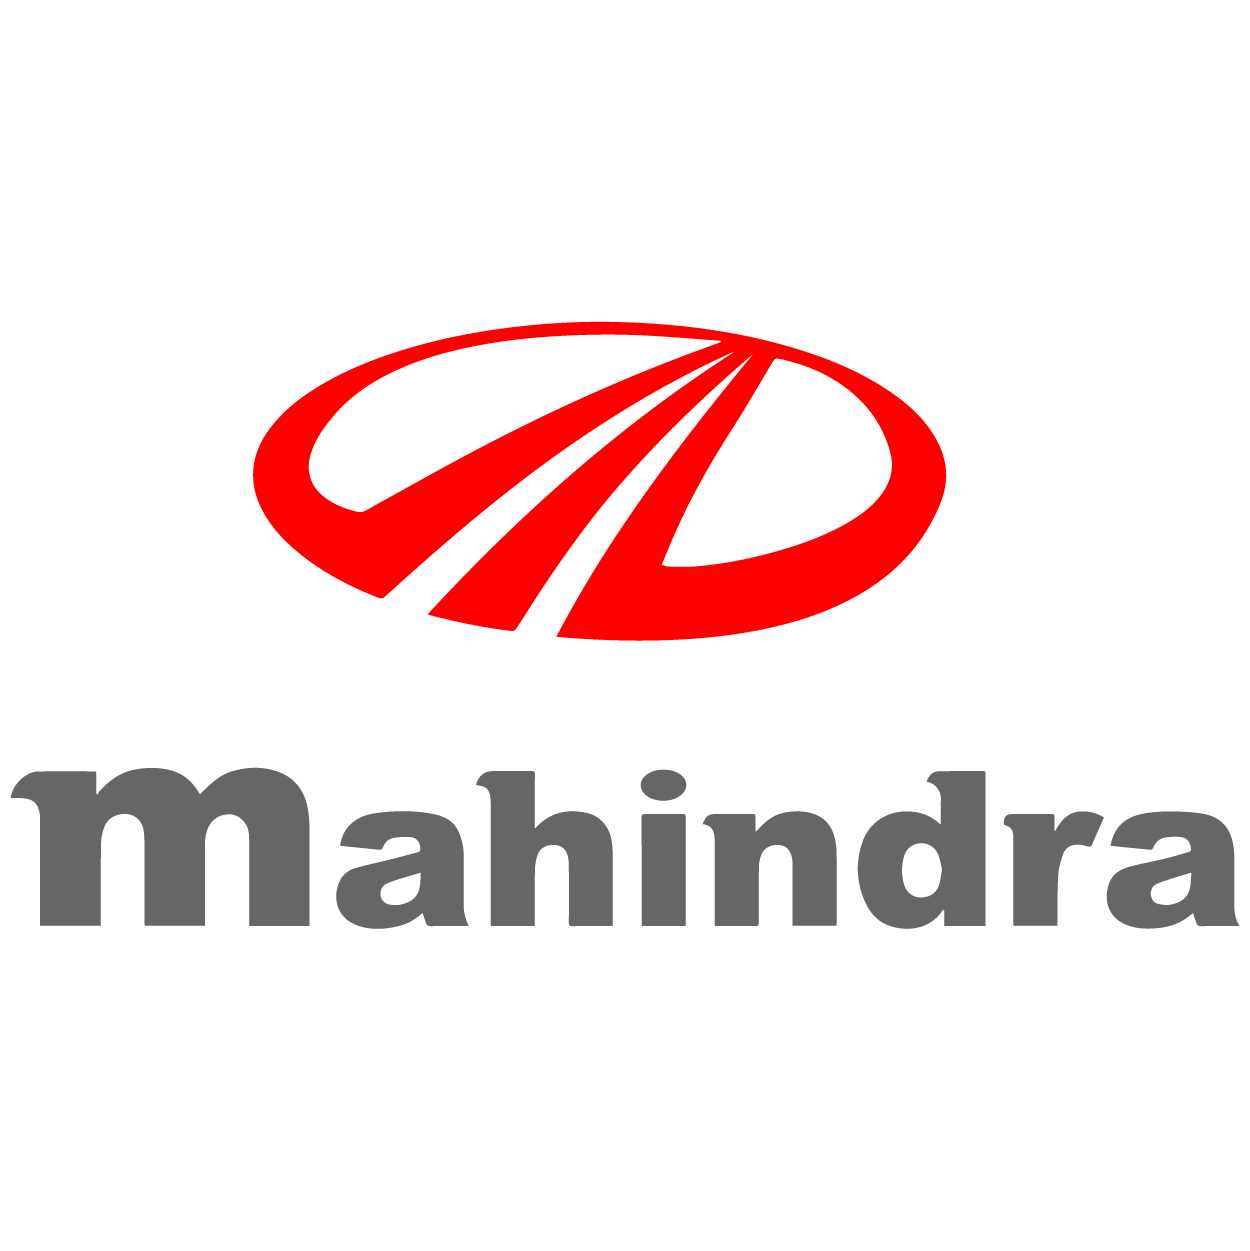 Logo_Mahindra